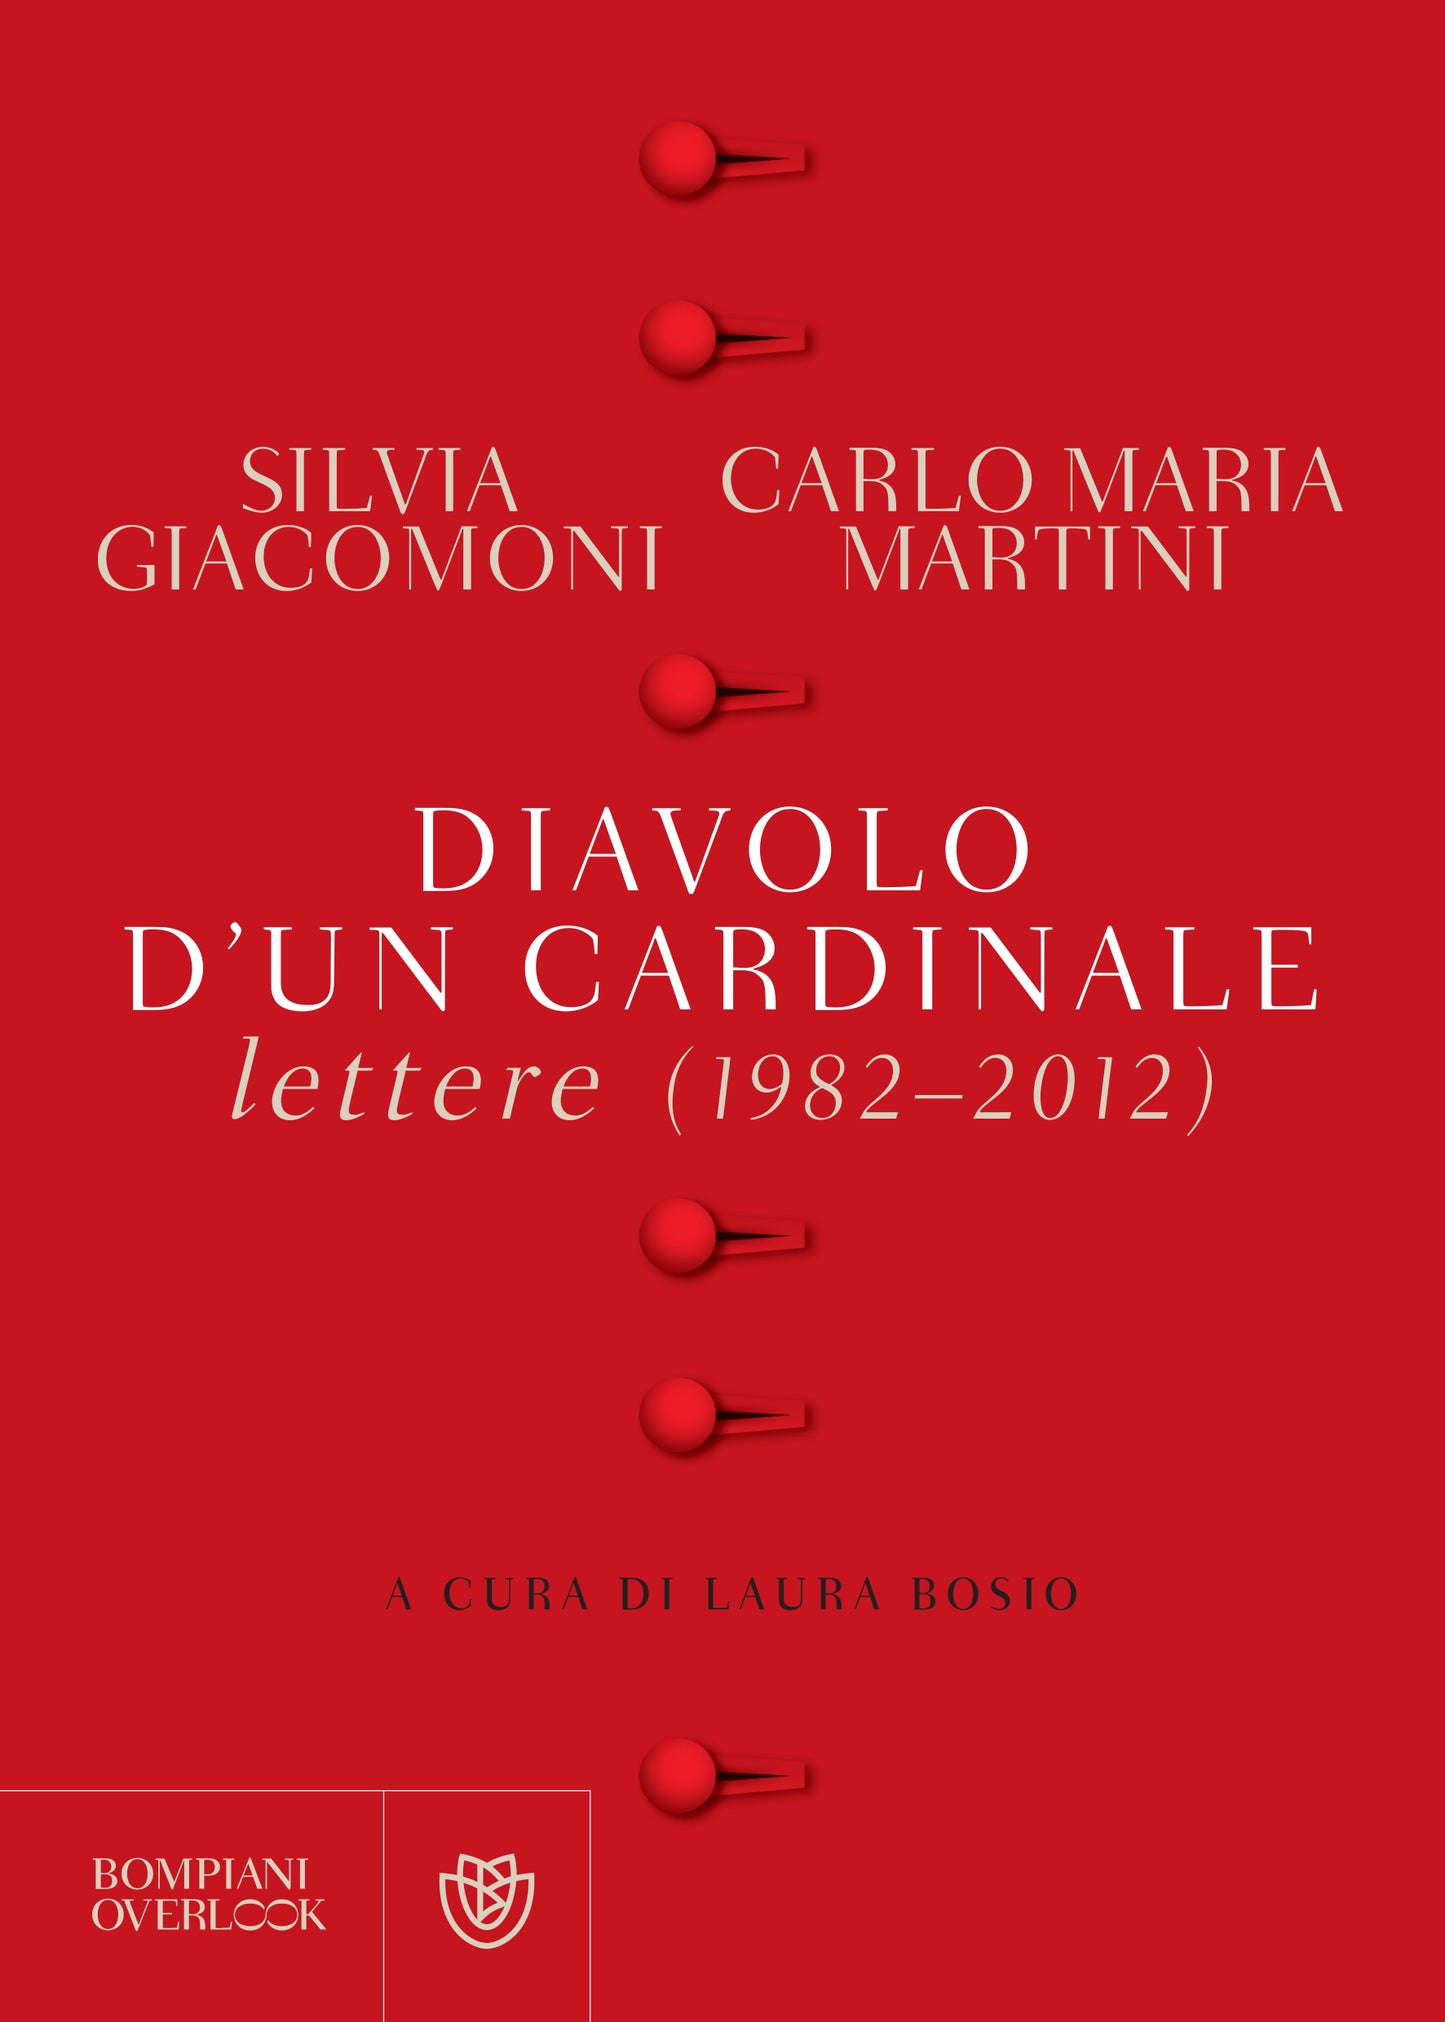 Diavolo d'un cardinale::Lettere (1982-2012)